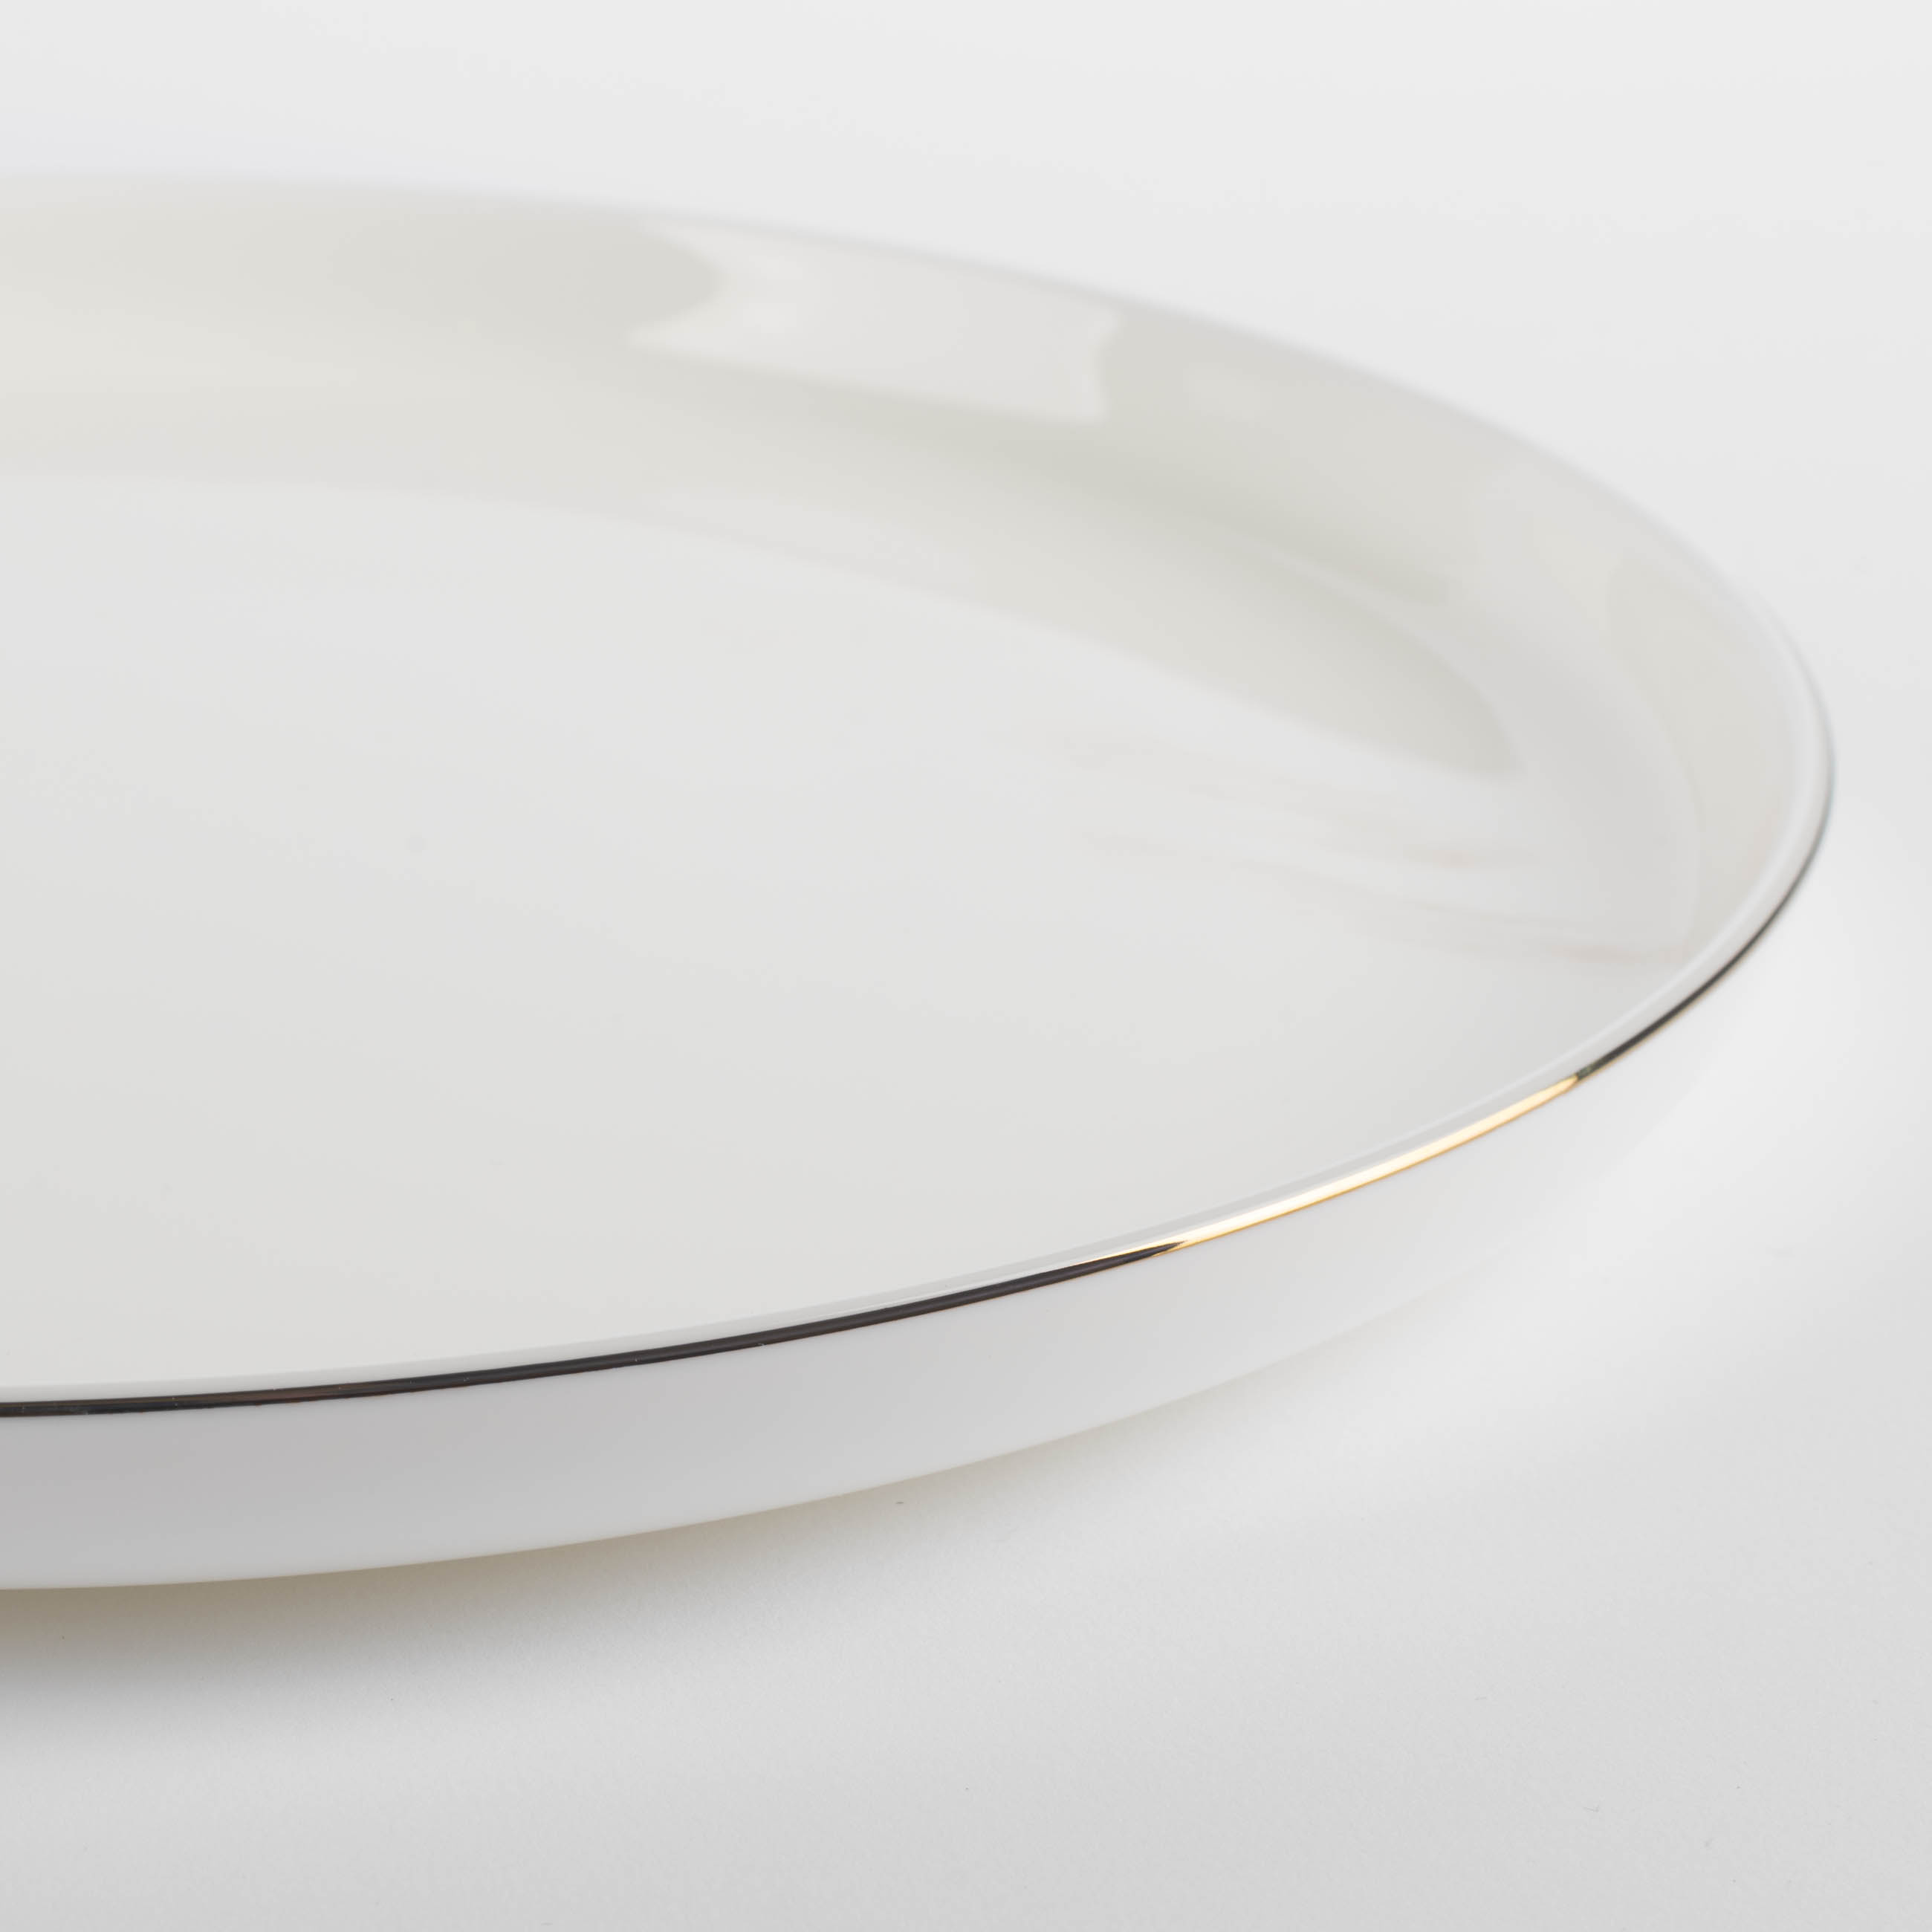 Тарелка обеденная, 26 см, фарфор F, белая, Ideal gold изображение № 4